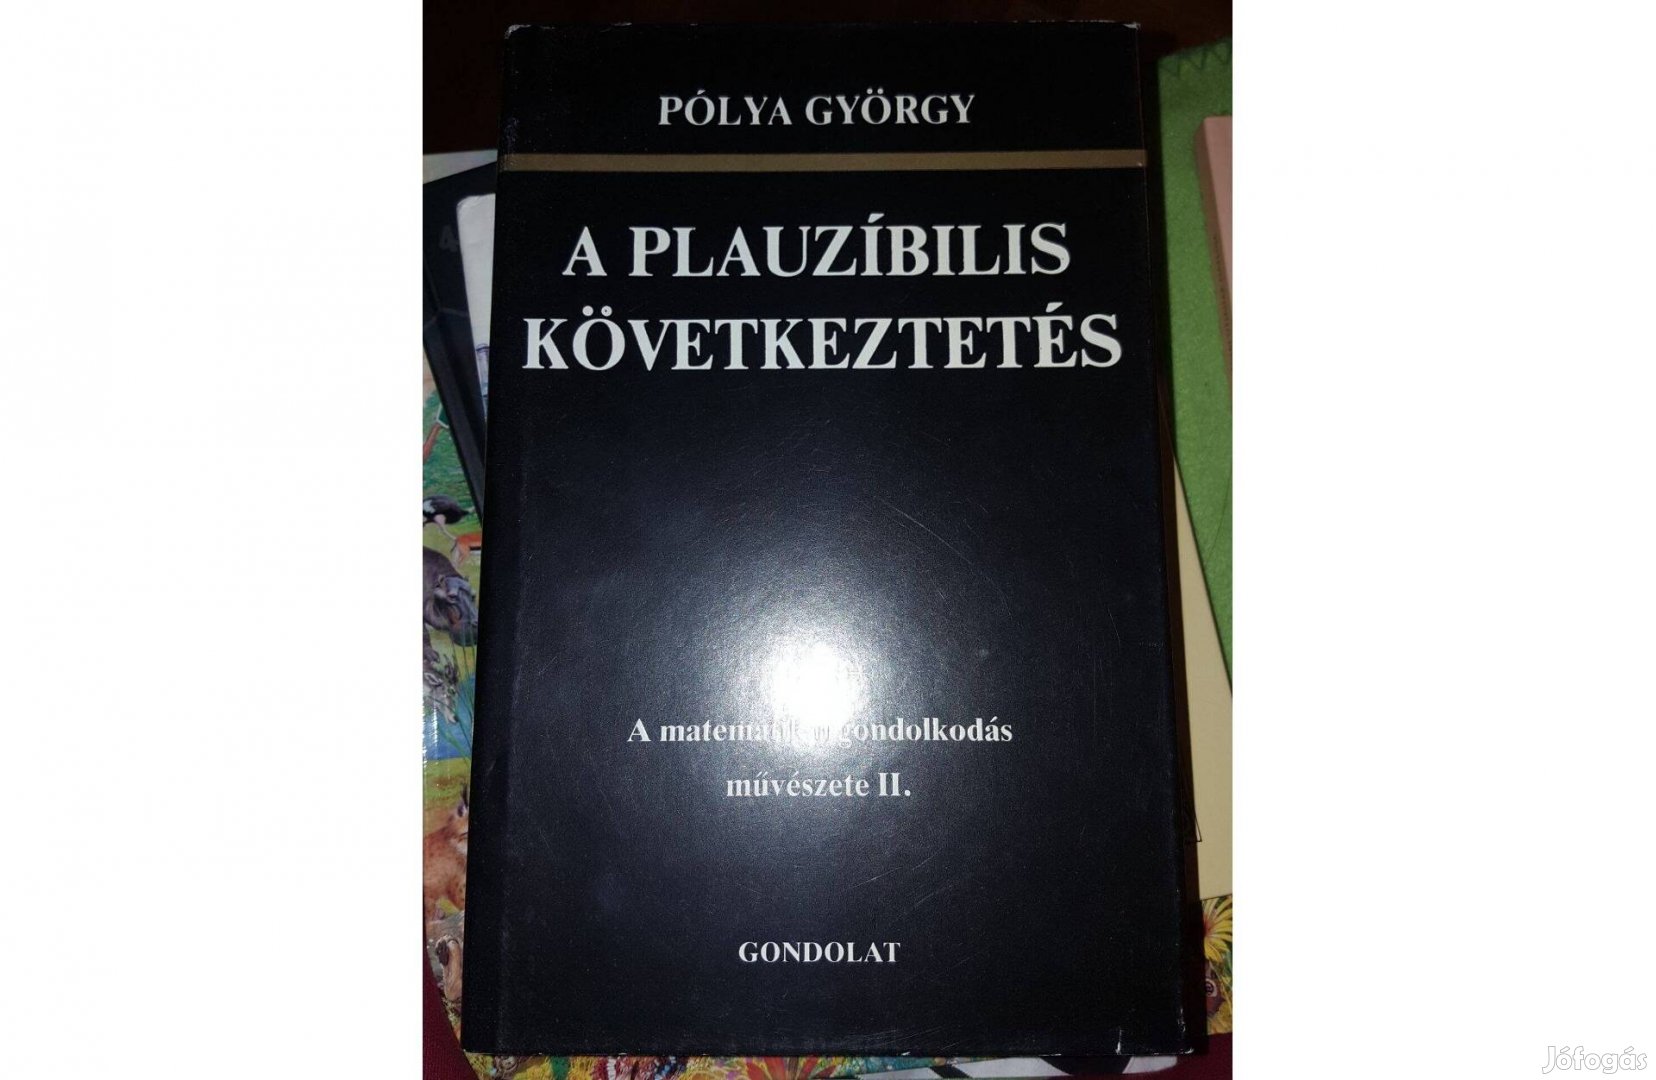 Pólya György: A plauzíbilis következtetés